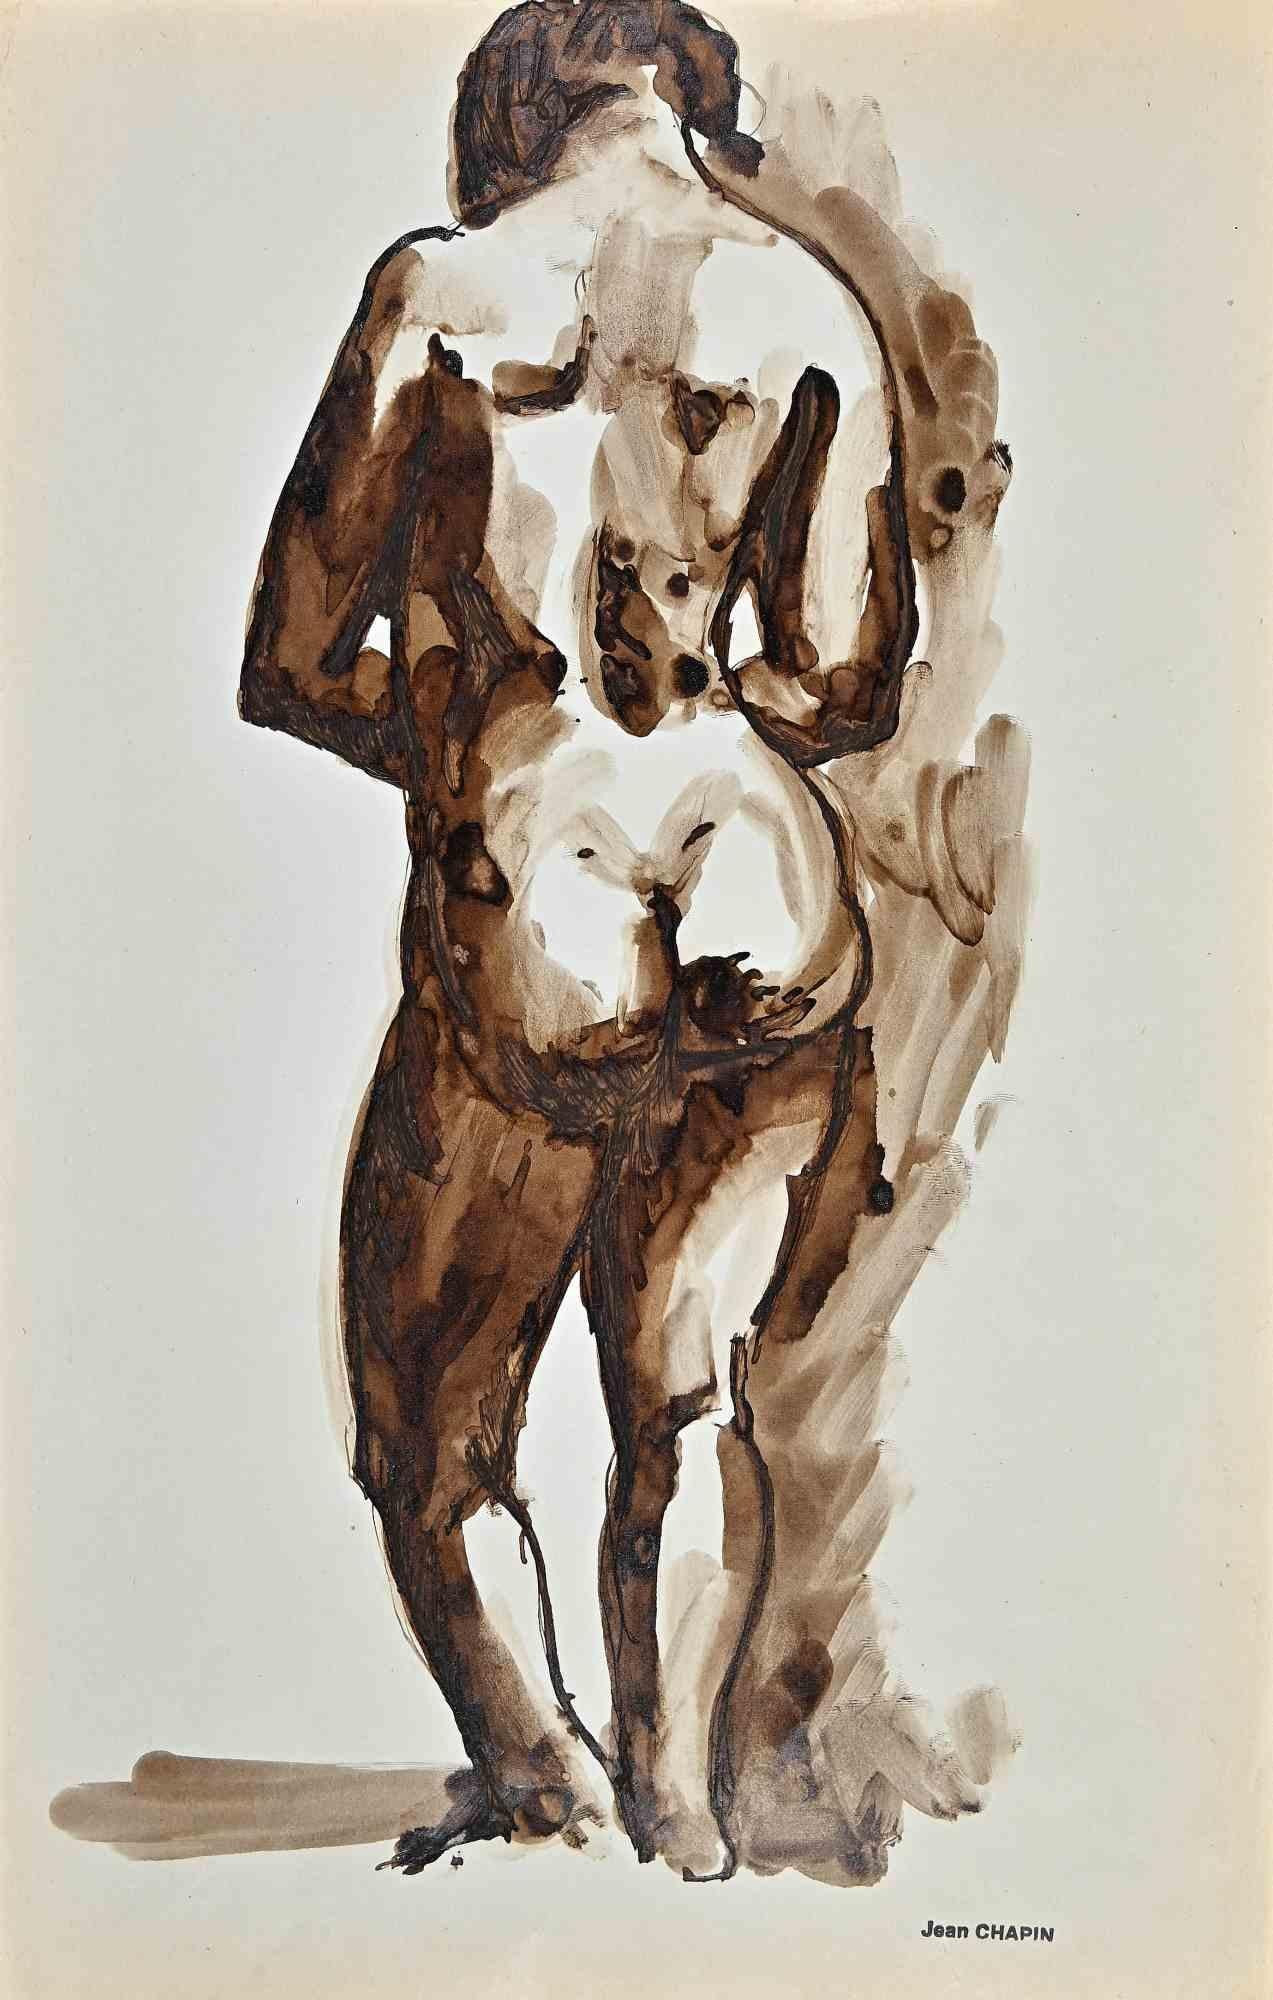 Nude of Woman ist eine Aquarell- und Tuschezeichnung von Jean Chapin aus den 1950er Jahren.

Signaturstempel auf dem vergilbten Papier.

Guter Zustand, mit Ausnahme von Stockflecken an den Rändern.

Jean Chapin ist ein französischer Maler und